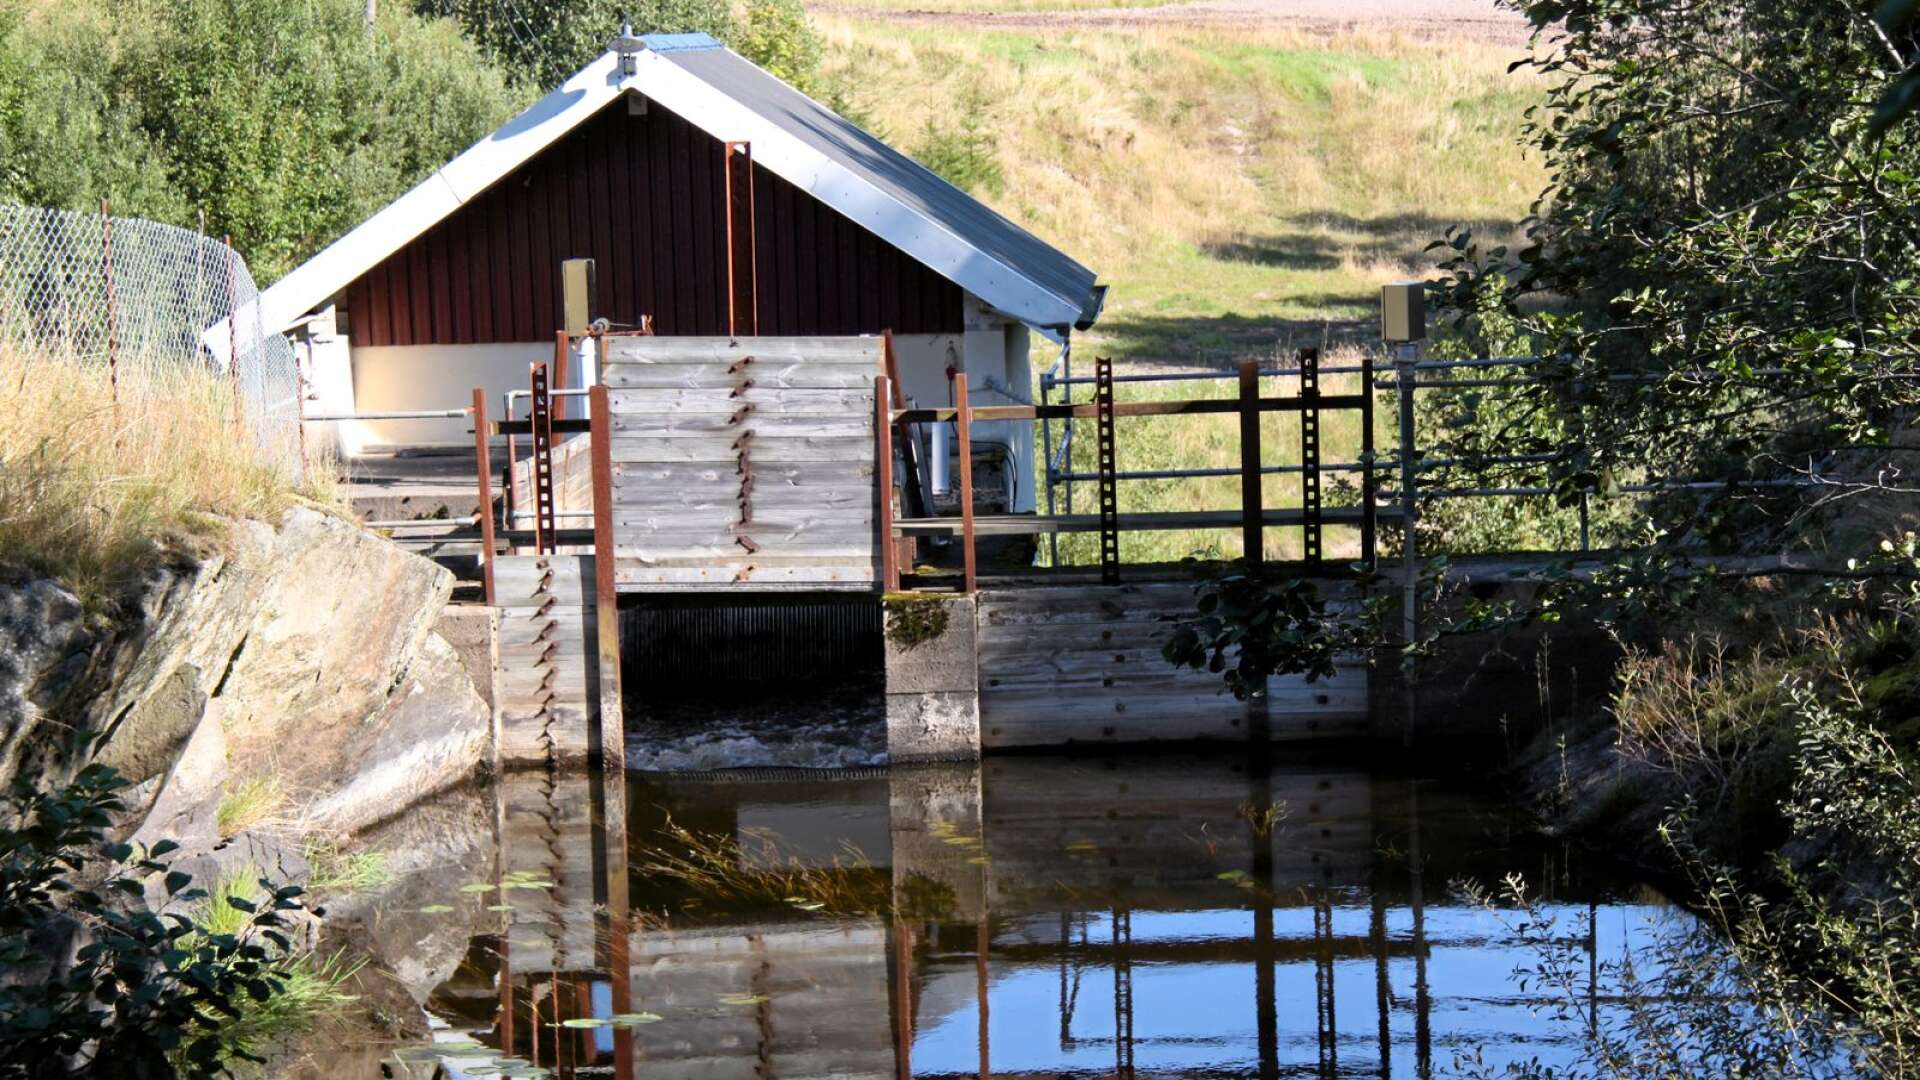 Med dammens skötsel påverkas hela det berörda vattendraget, ett ansvar som kräver kunskap om väderlekarnas och årstidernas krav, skriver Kjell-Arne Ottosson. (Bild på vattenkraftverk väster om Färgelanda/Högsäter.)